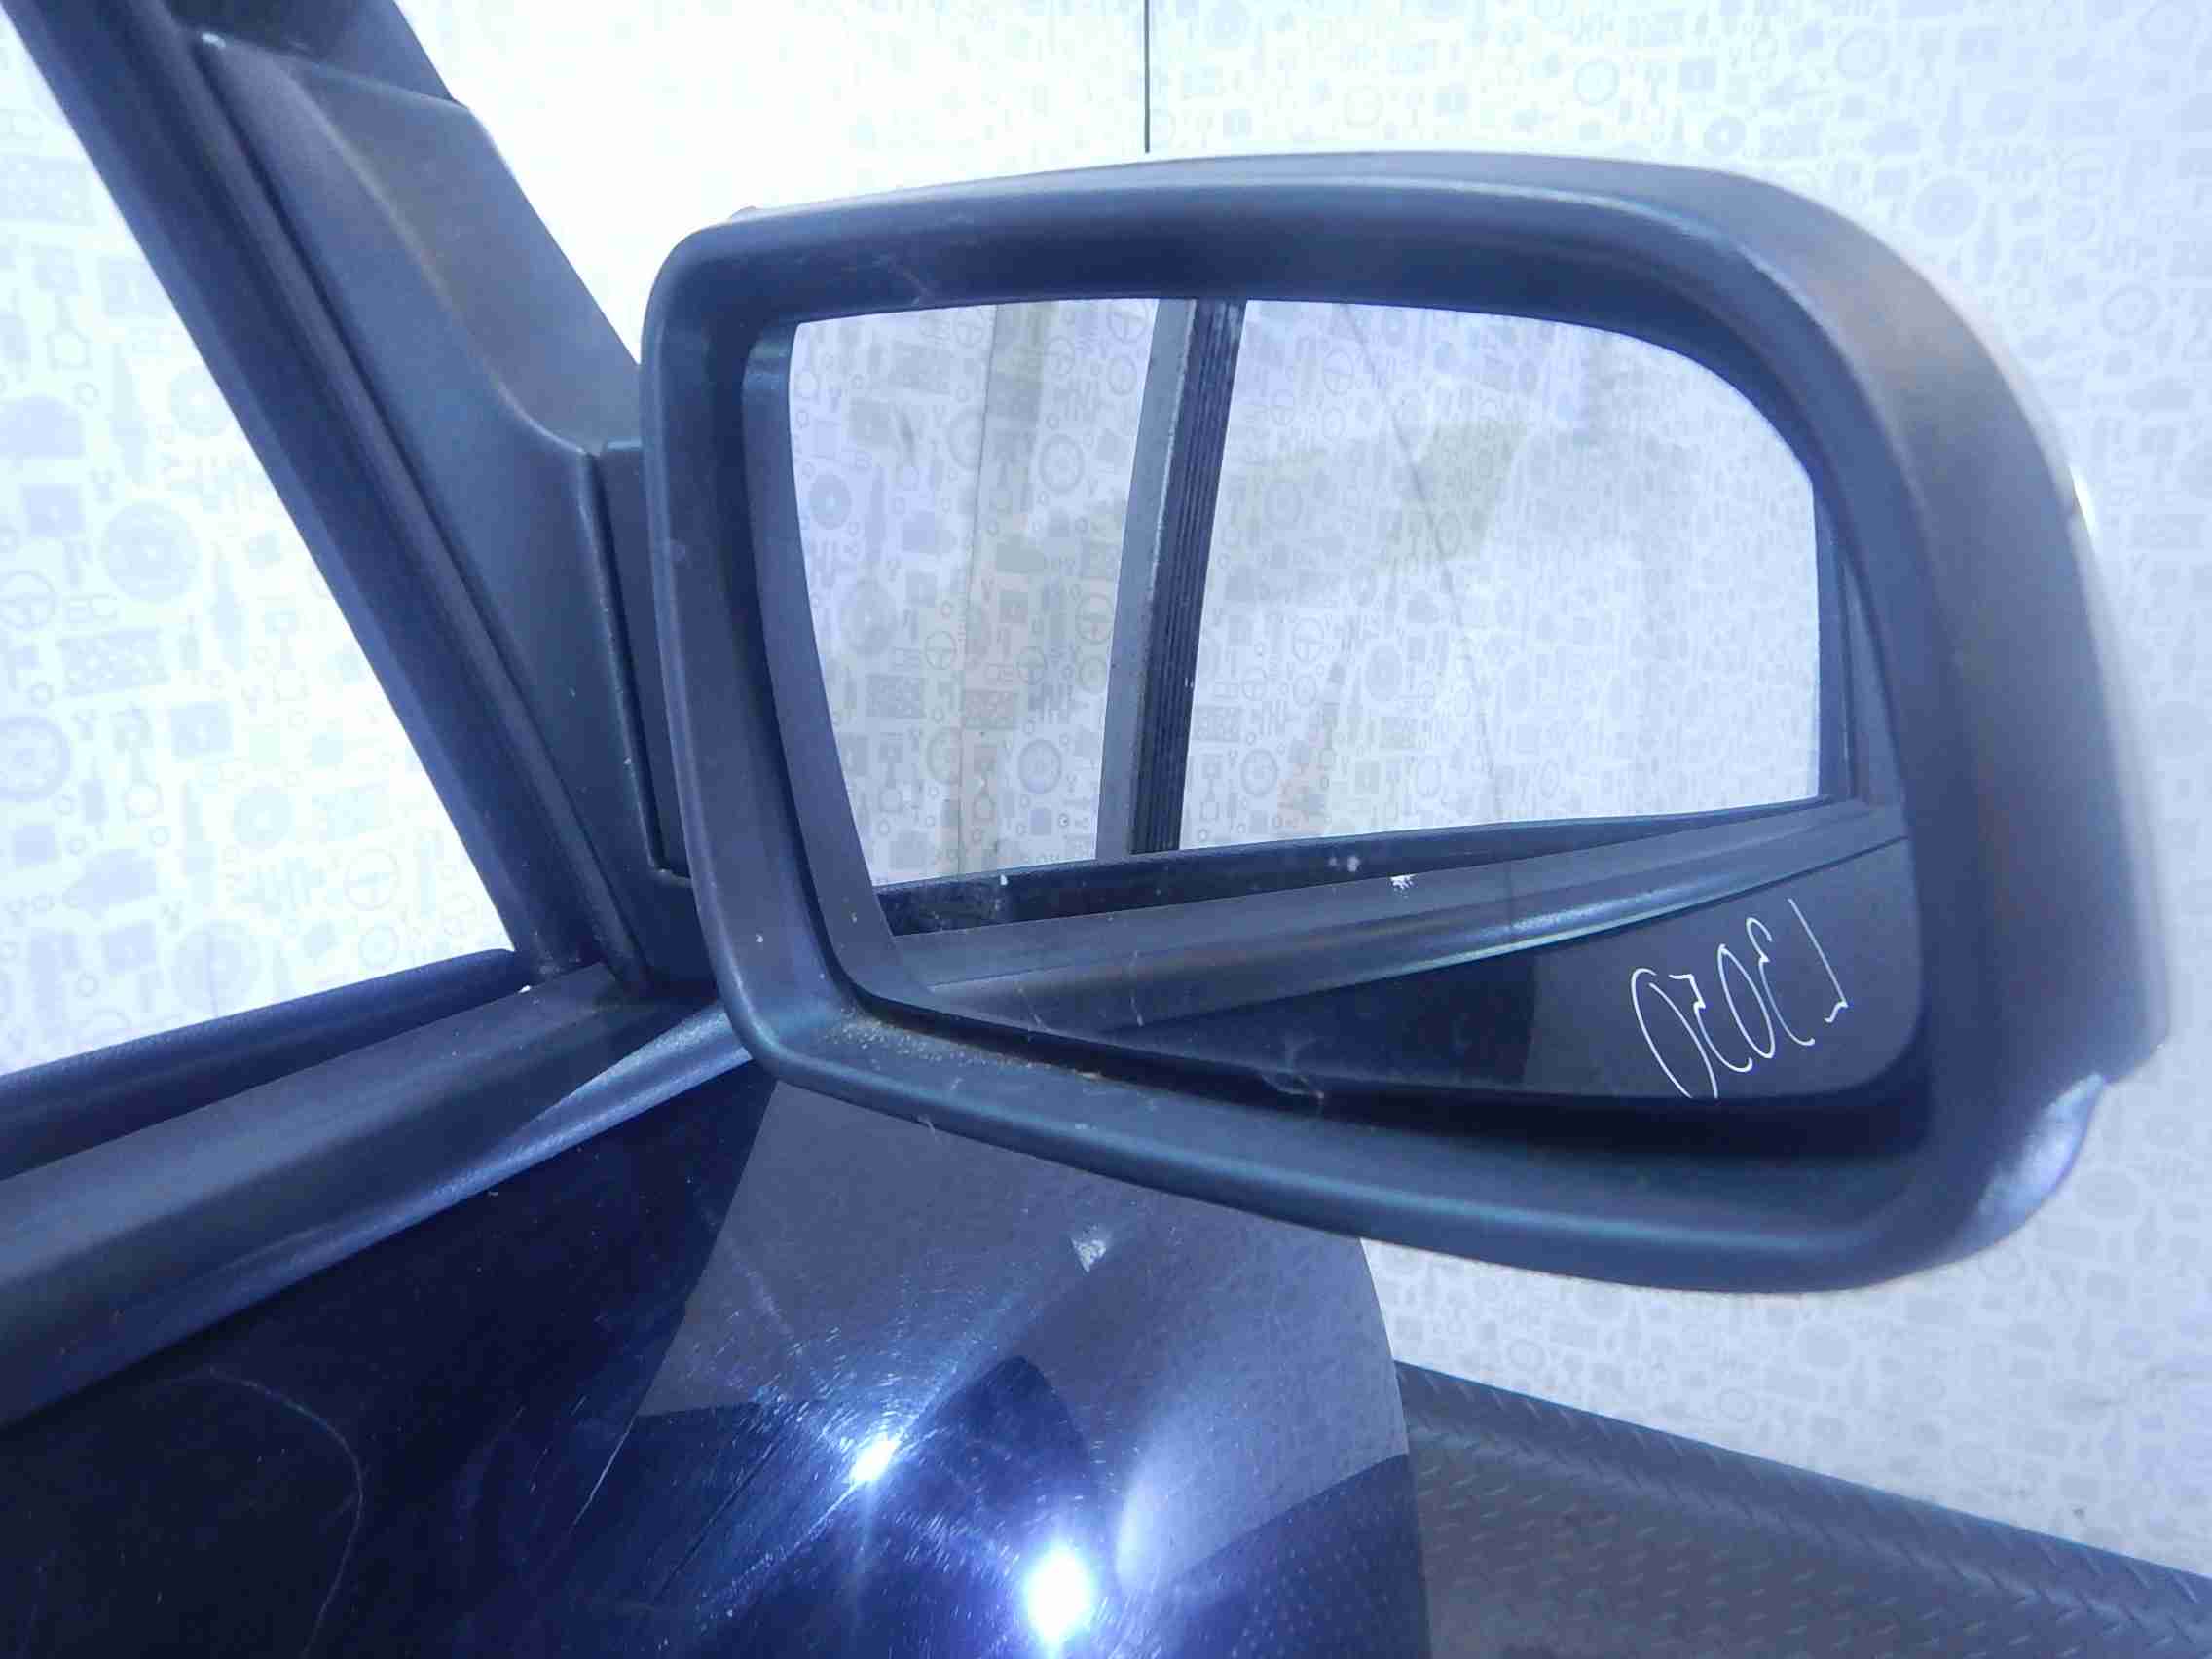 Опель зеркала боковые купить. Зеркало для Опель Зафира б правое. Opel Zafira b 2011 зеркало боковое левое. 1428368 Зеркало Opel Zafira b. Боковое зеркало Зафира б 2010.